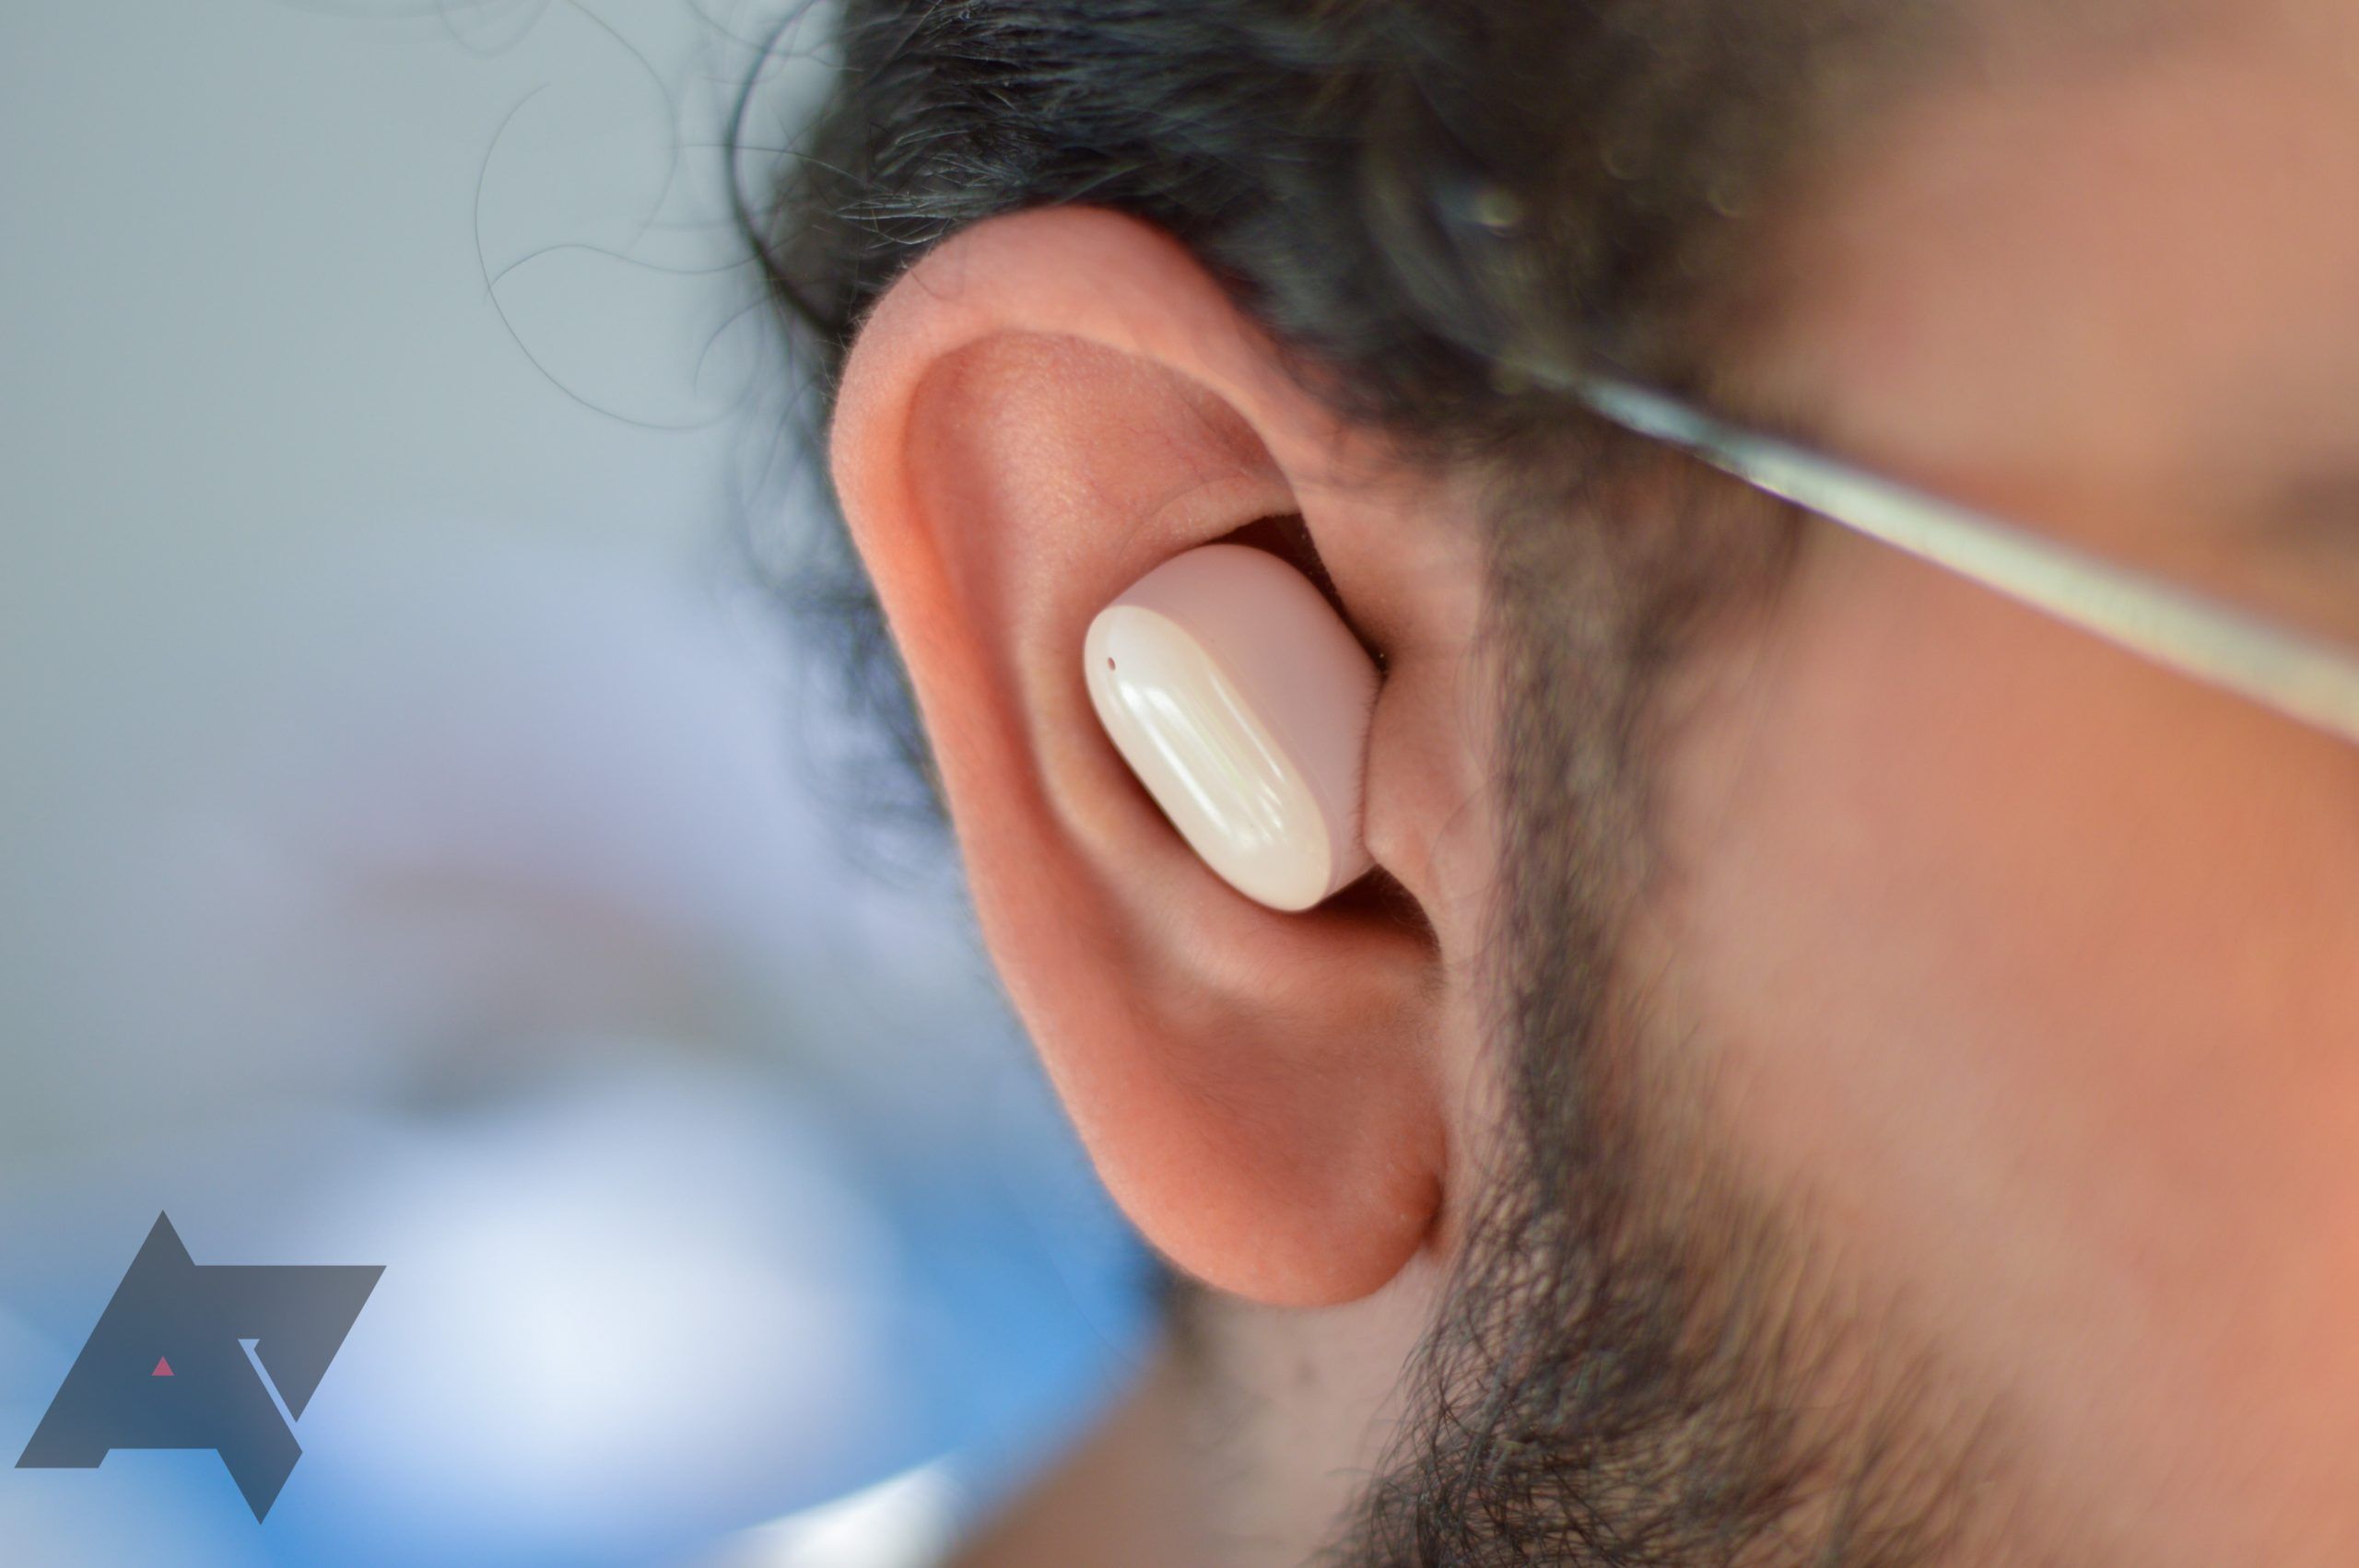 Um verdadeiro fone de ouvido sem fio no ouvido. 